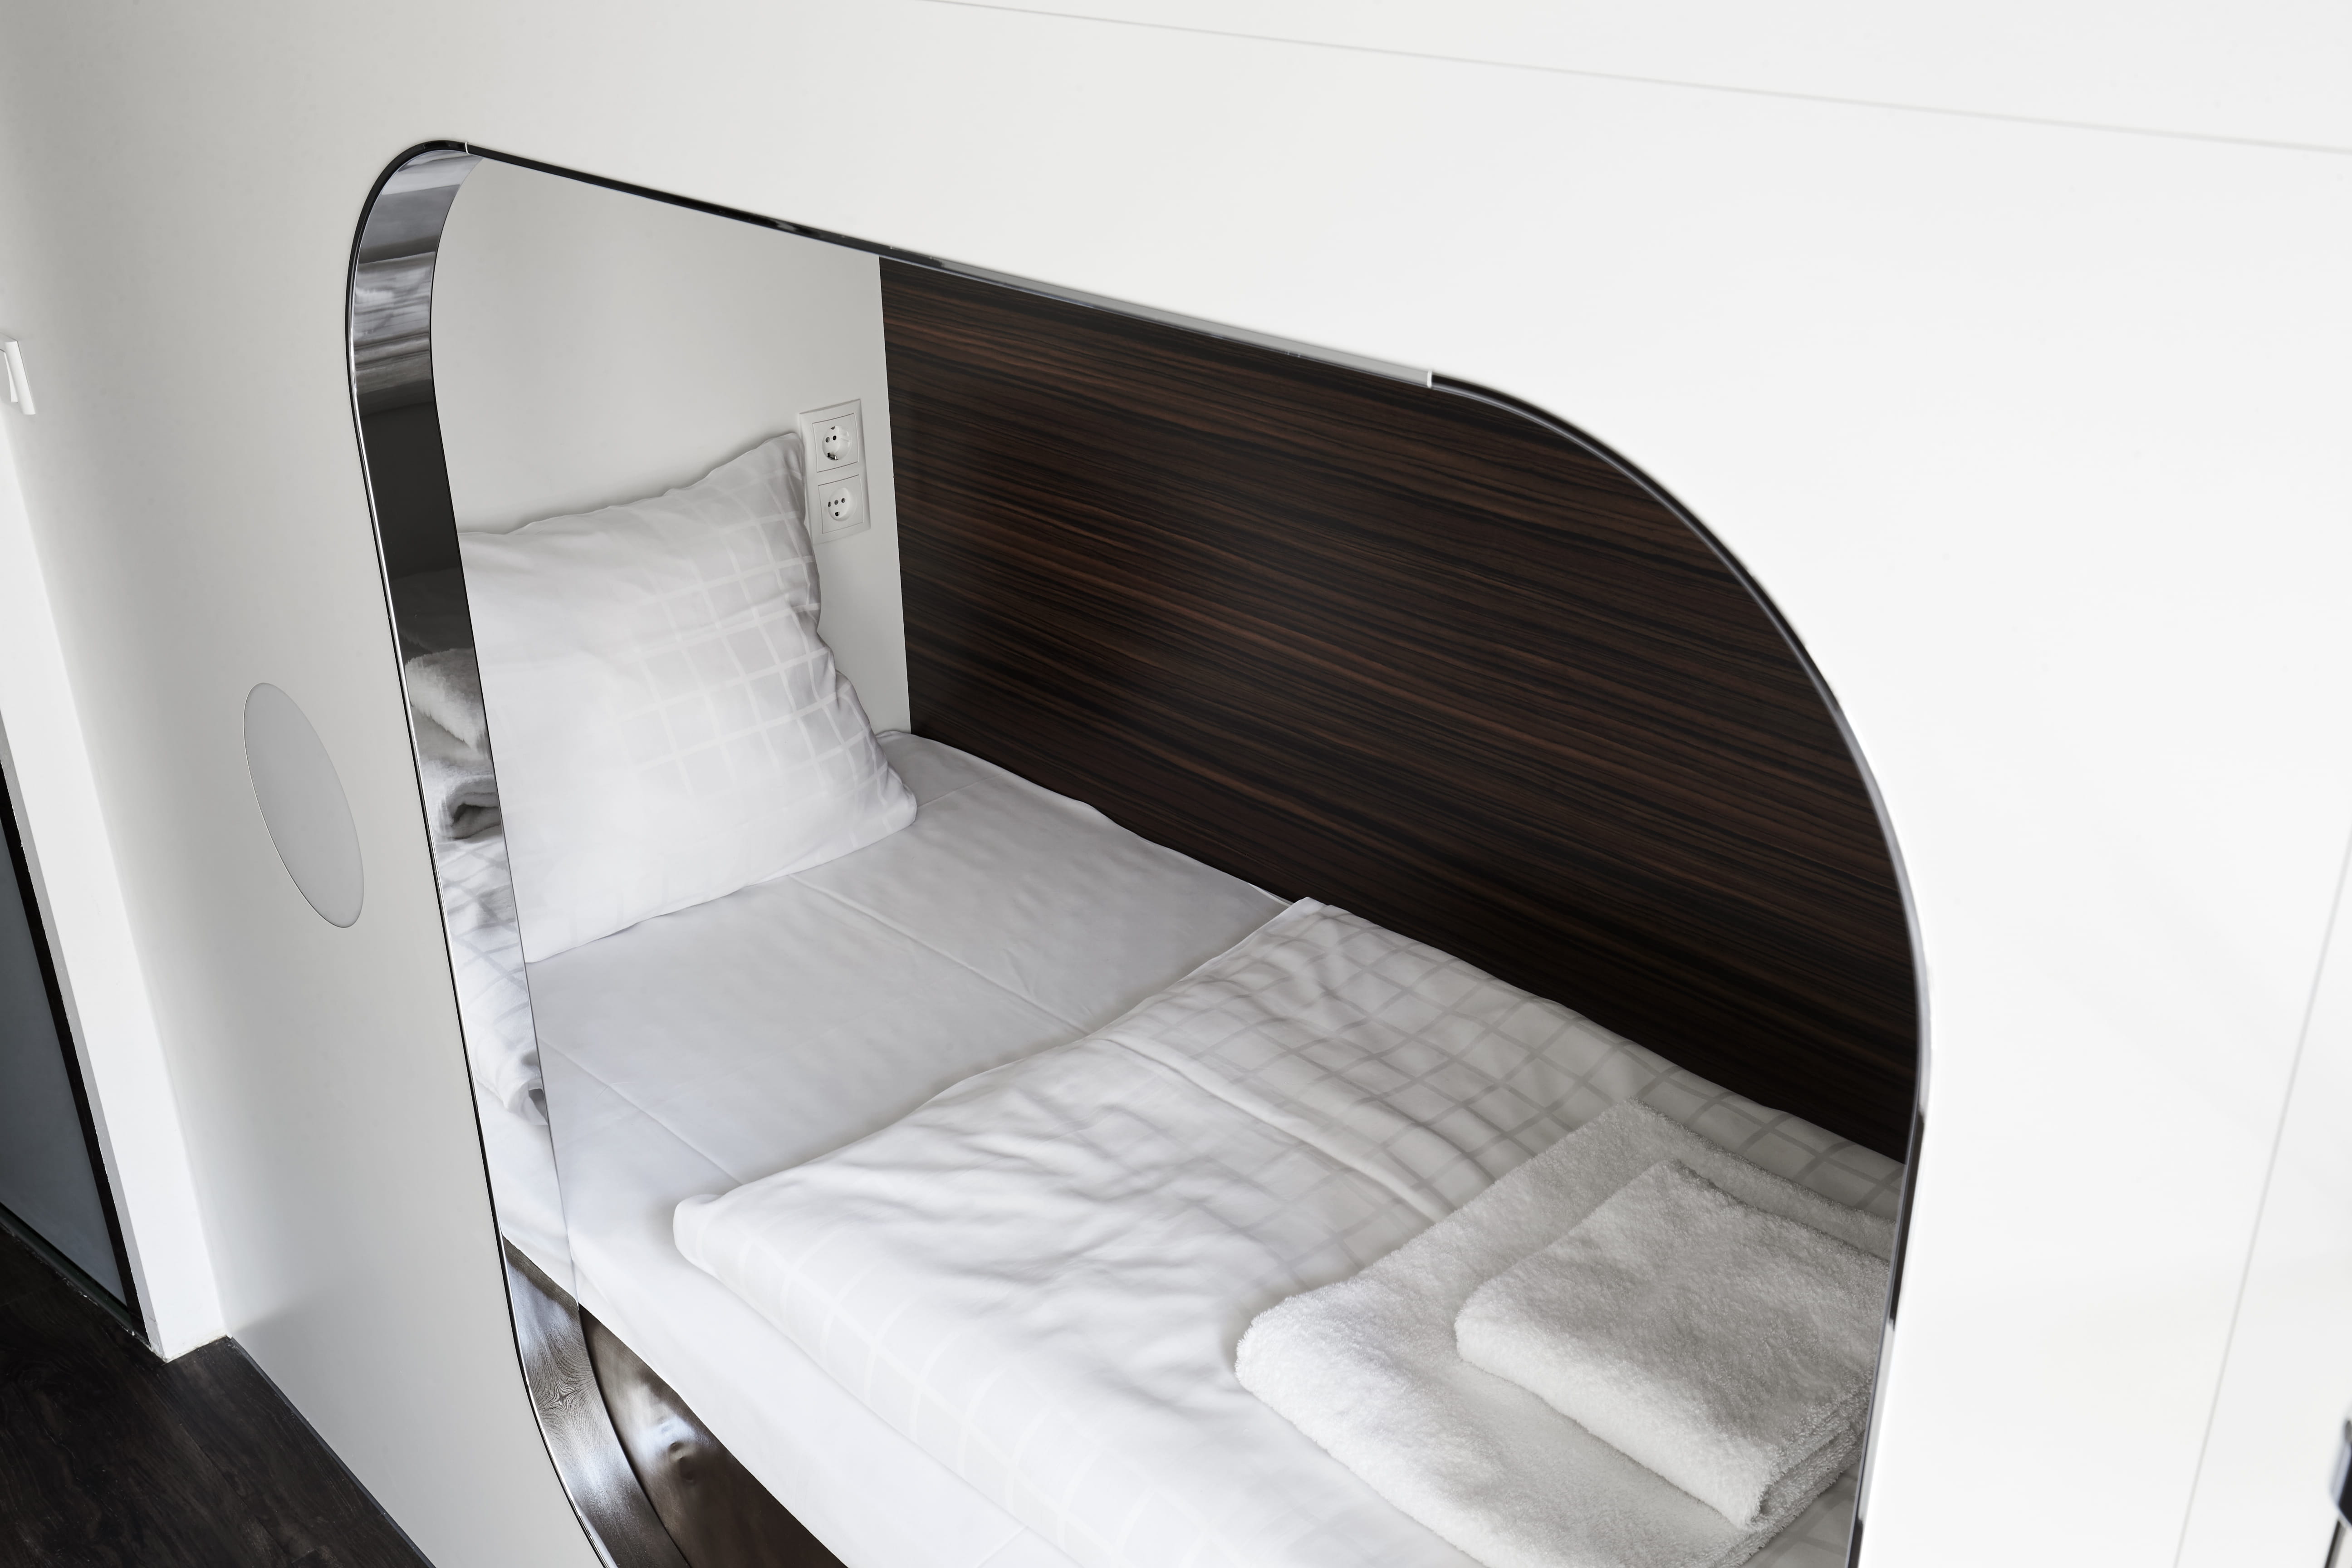 Opredt kabineseng med luksus madras fra Getama